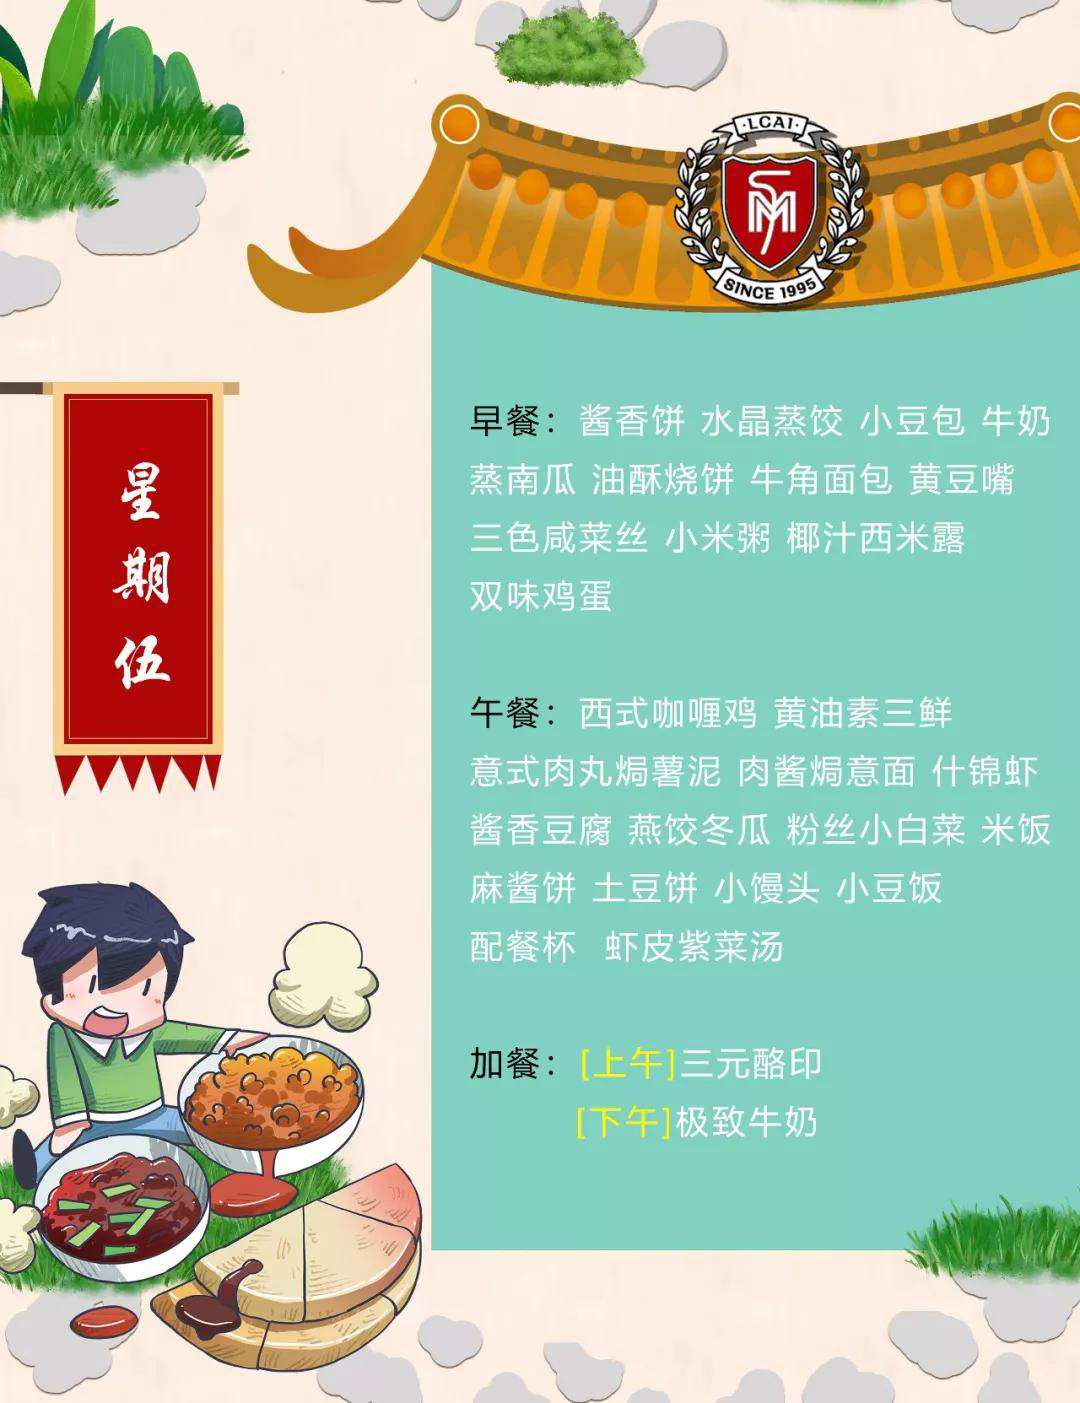 【力迈】Weekly Menu  第十四周美味菜谱 (图6)